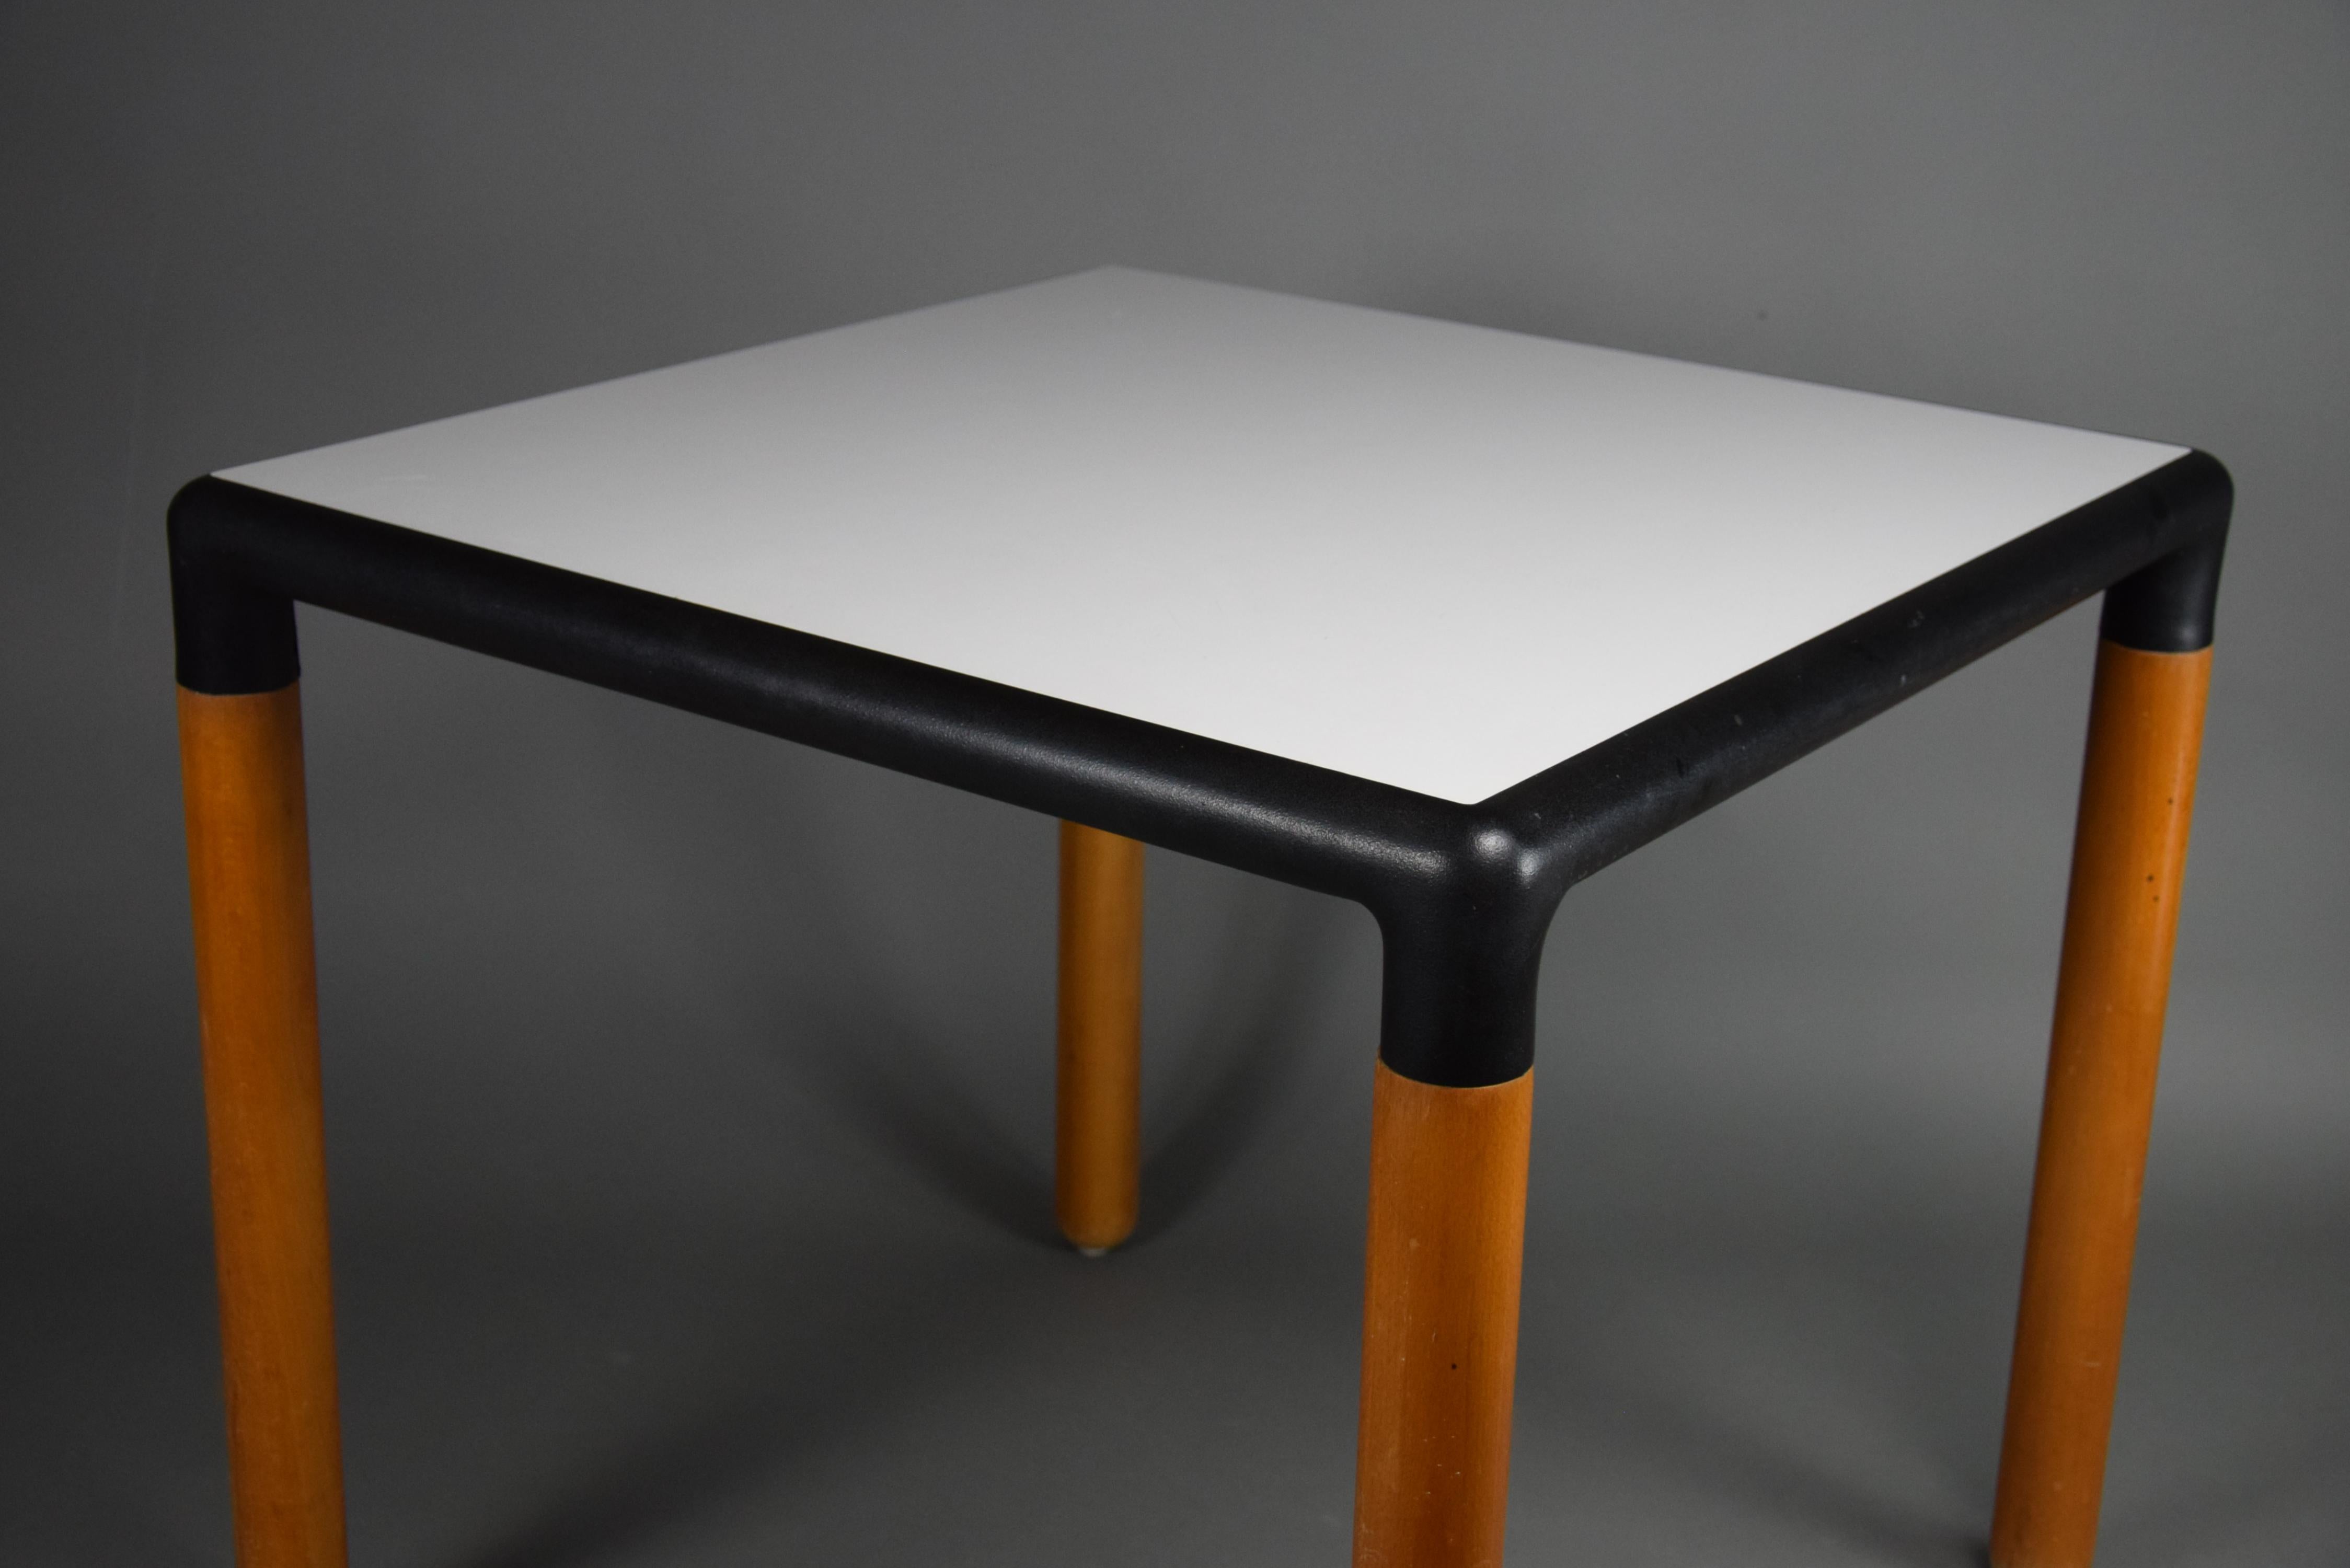 Wir präsentieren das Flex 2000 Esstischset, ein zeitloses Meisterwerk, das Gerd Lange in den 1980er Jahren für Thonet entworfen hat. Erleben Sie die perfekte Mischung aus Retro-Charme und modernem Stil, wenn Sie sich um diesen kultigen Tisch mit